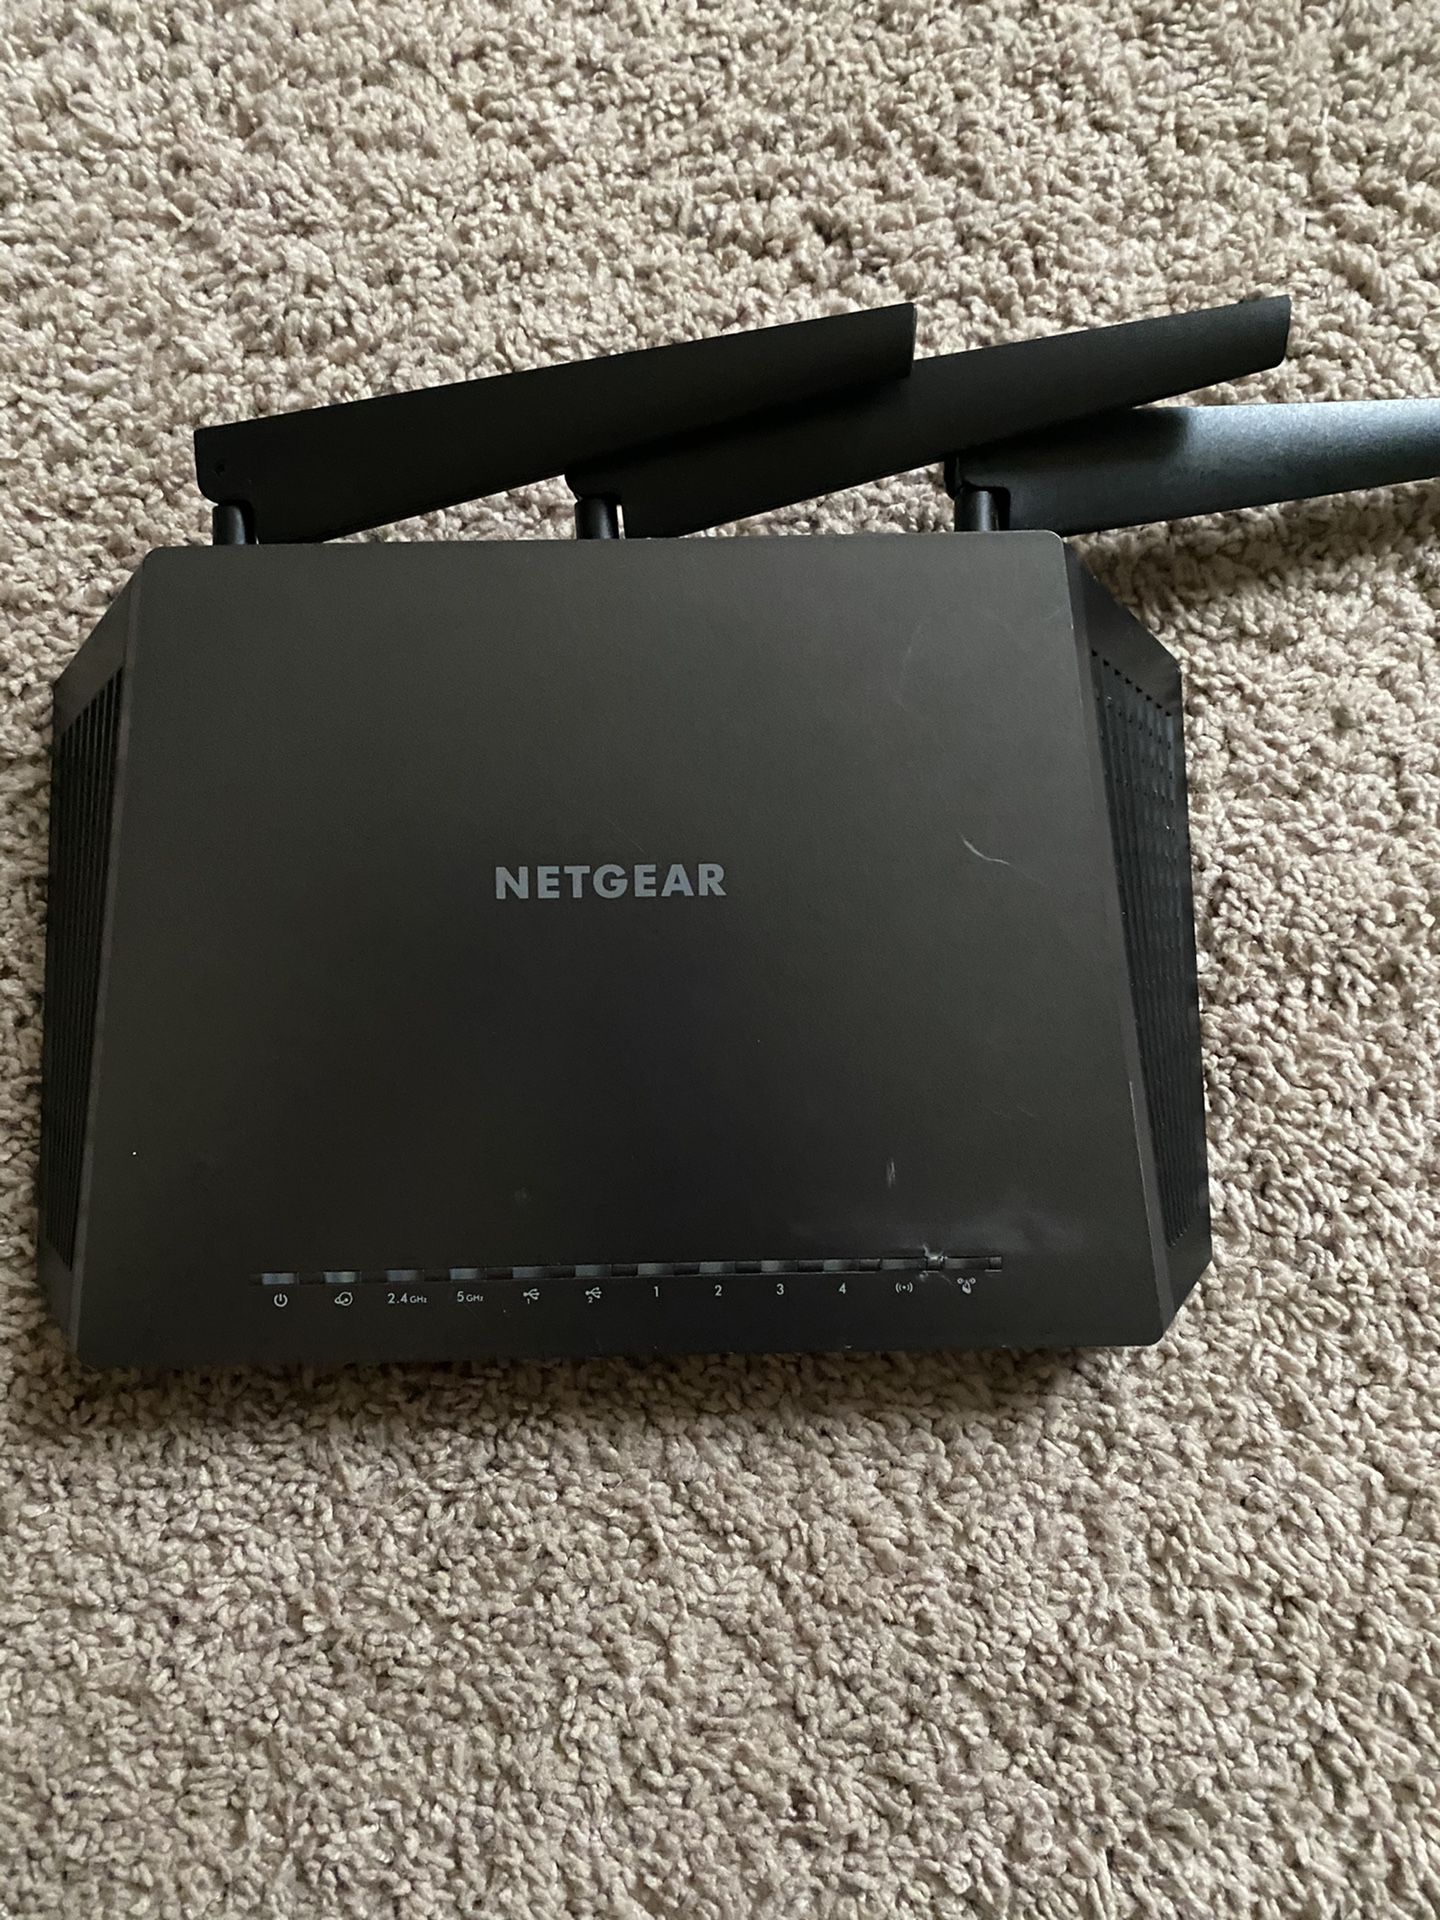 NetGear NightHawk R7000 WiFi Router